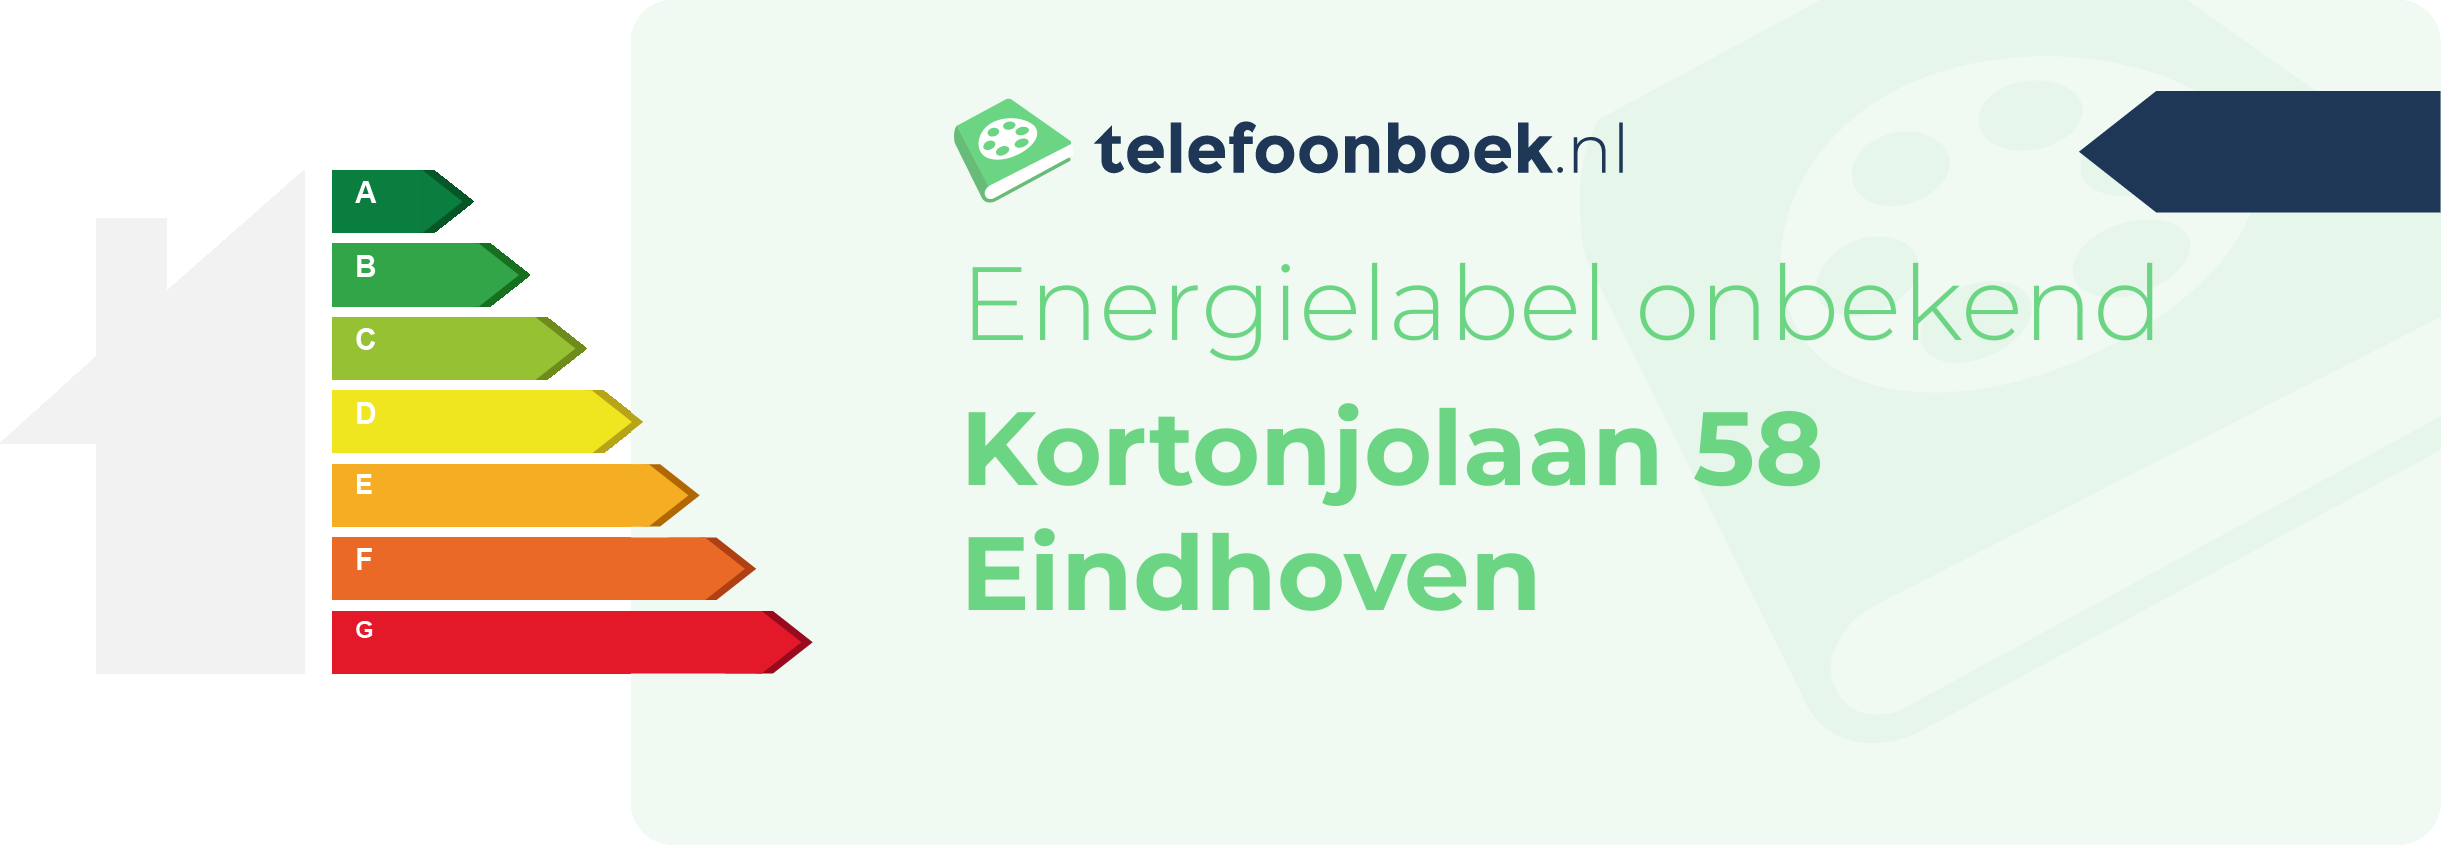 Energielabel Kortonjolaan 58 Eindhoven